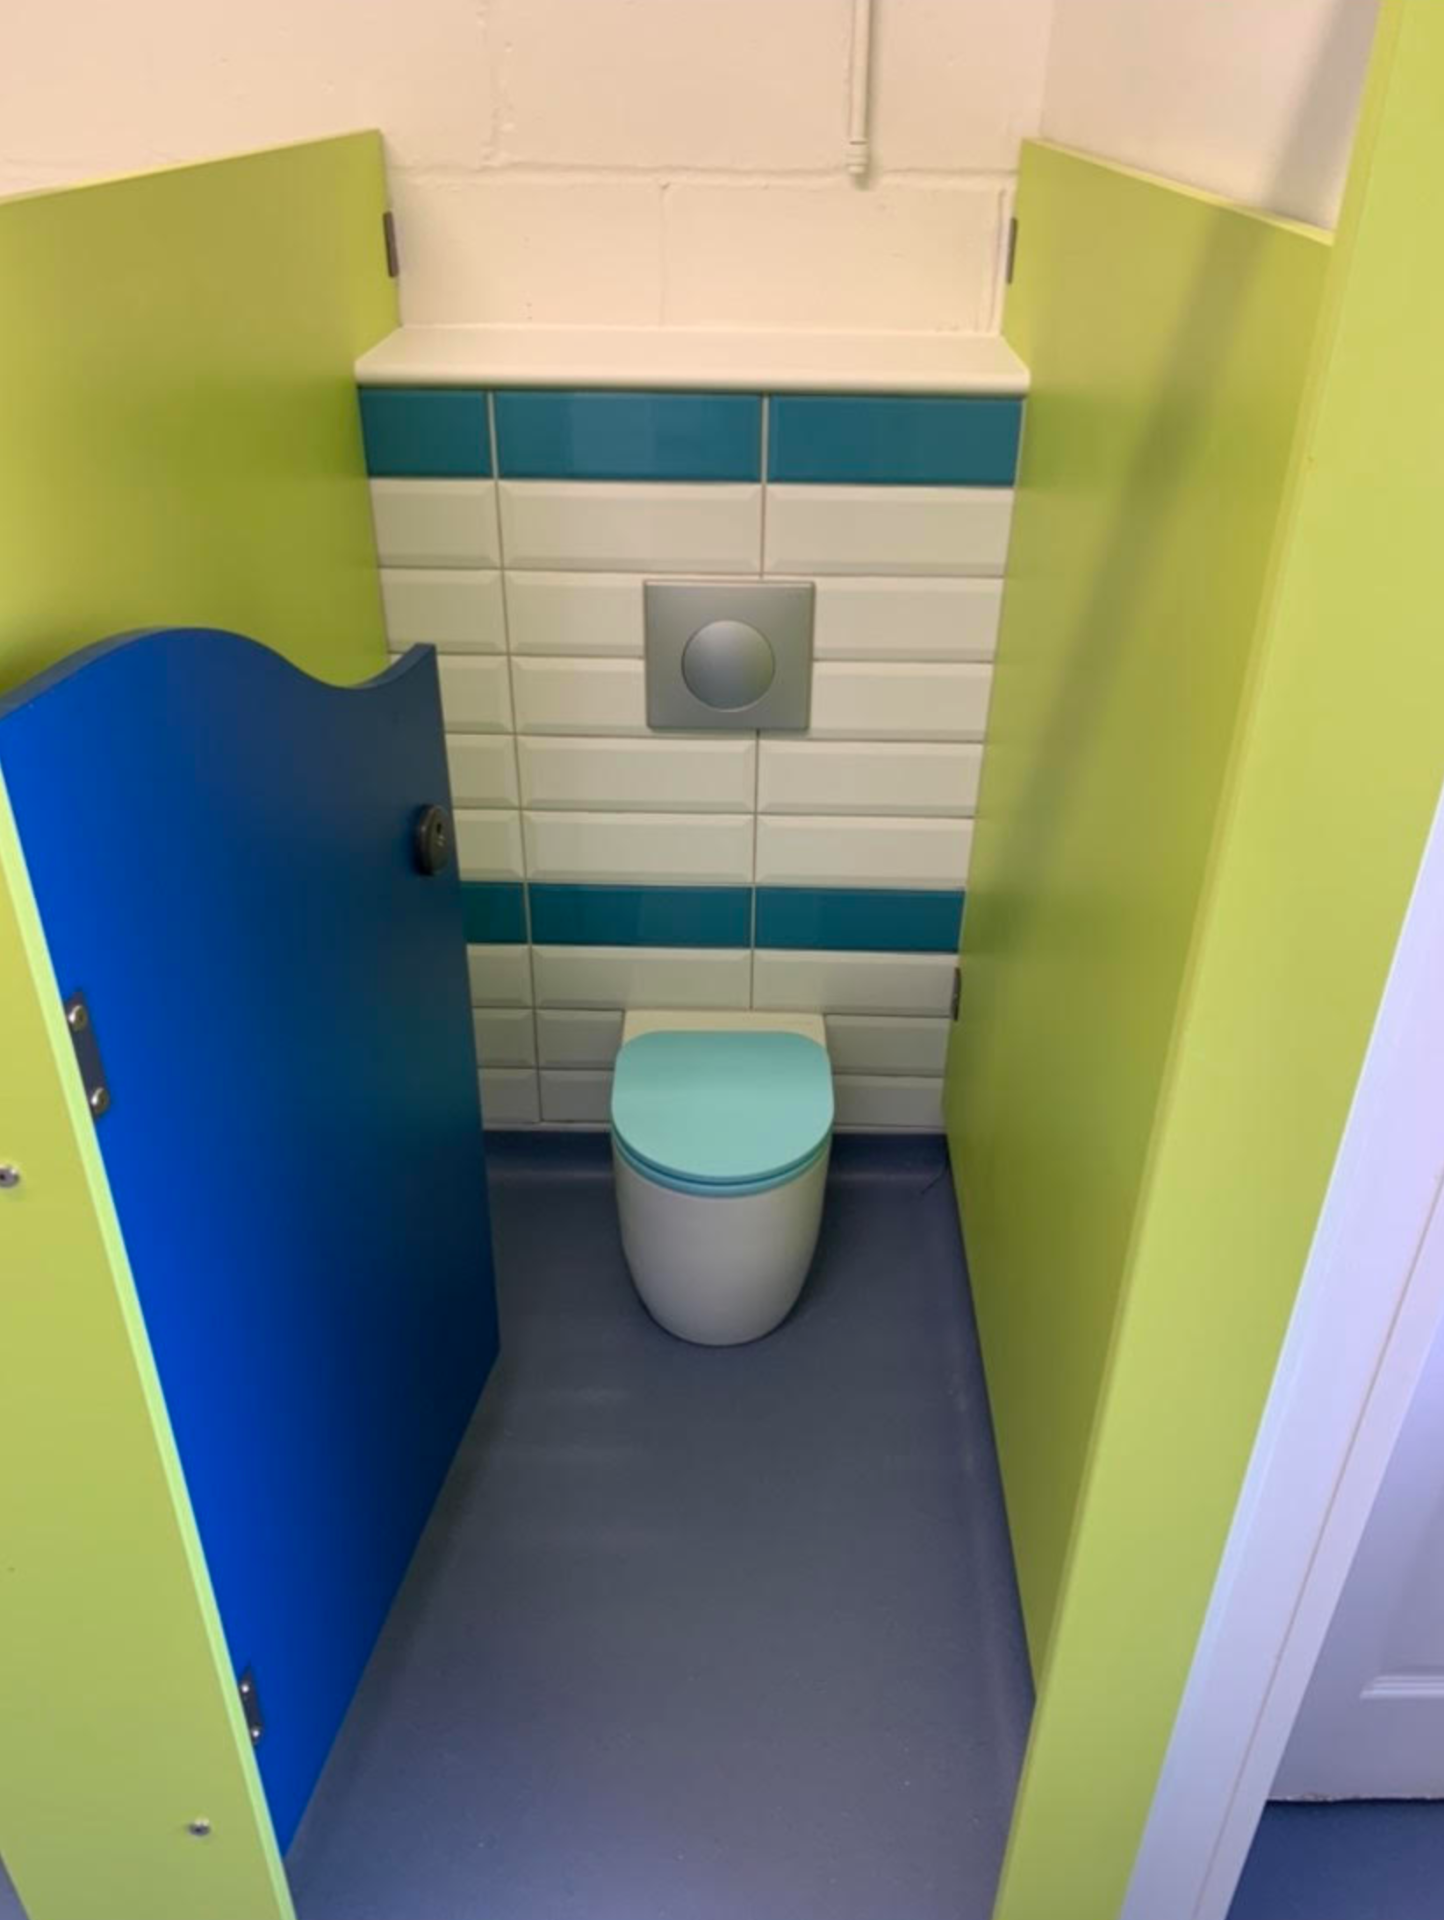 Washroom for a school